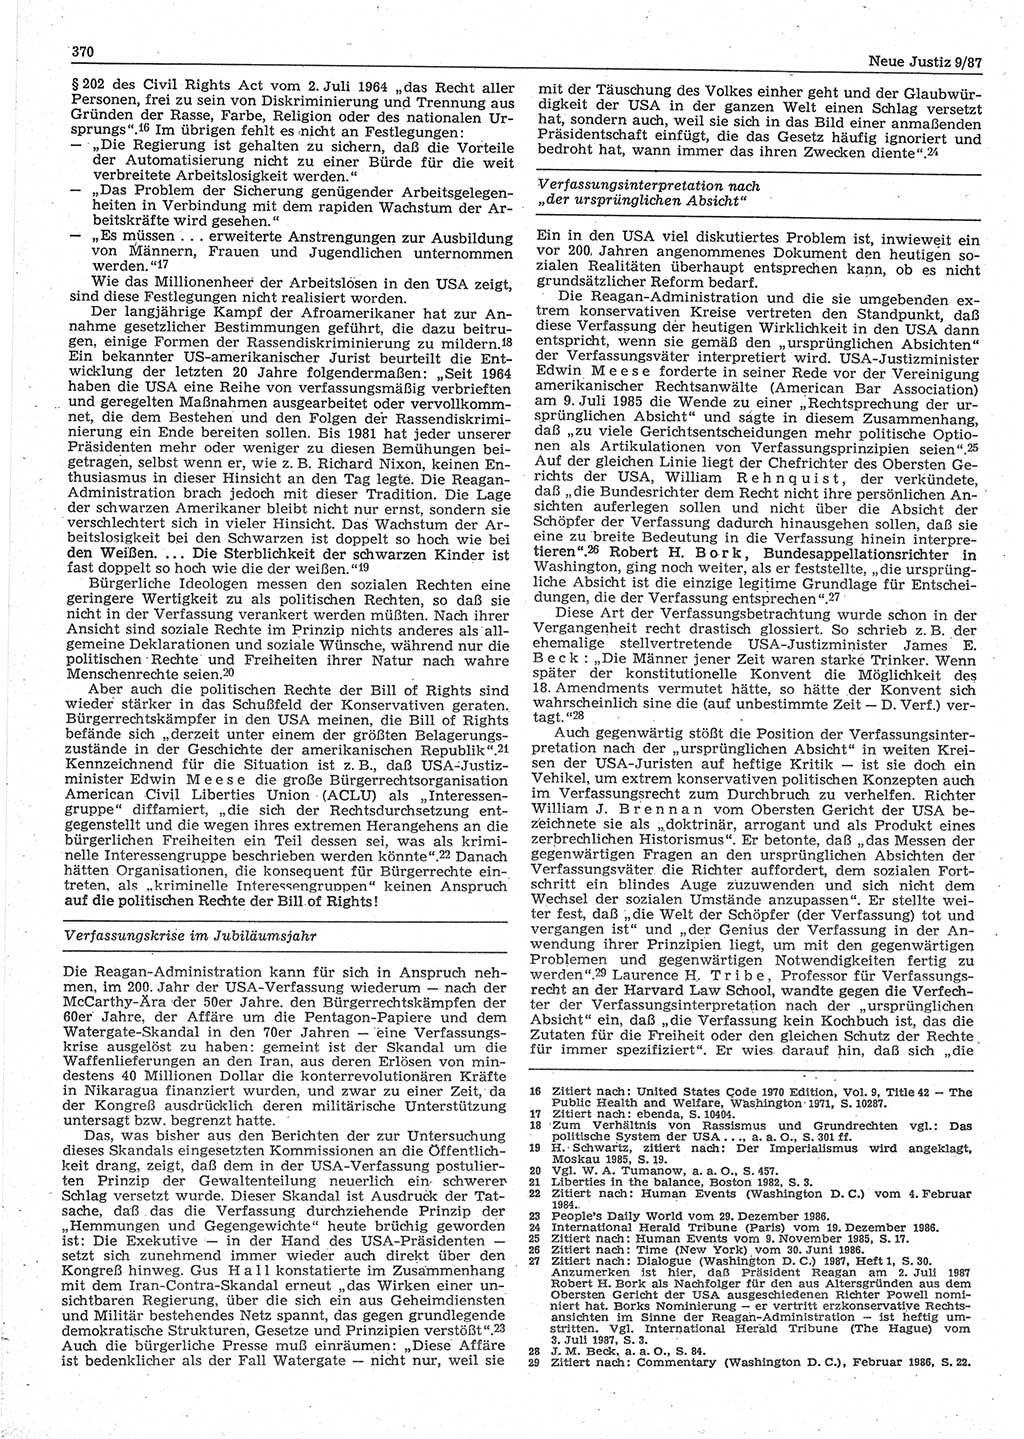 Neue Justiz (NJ), Zeitschrift für sozialistisches Recht und Gesetzlichkeit [Deutsche Demokratische Republik (DDR)], 41. Jahrgang 1987, Seite 370 (NJ DDR 1987, S. 370)